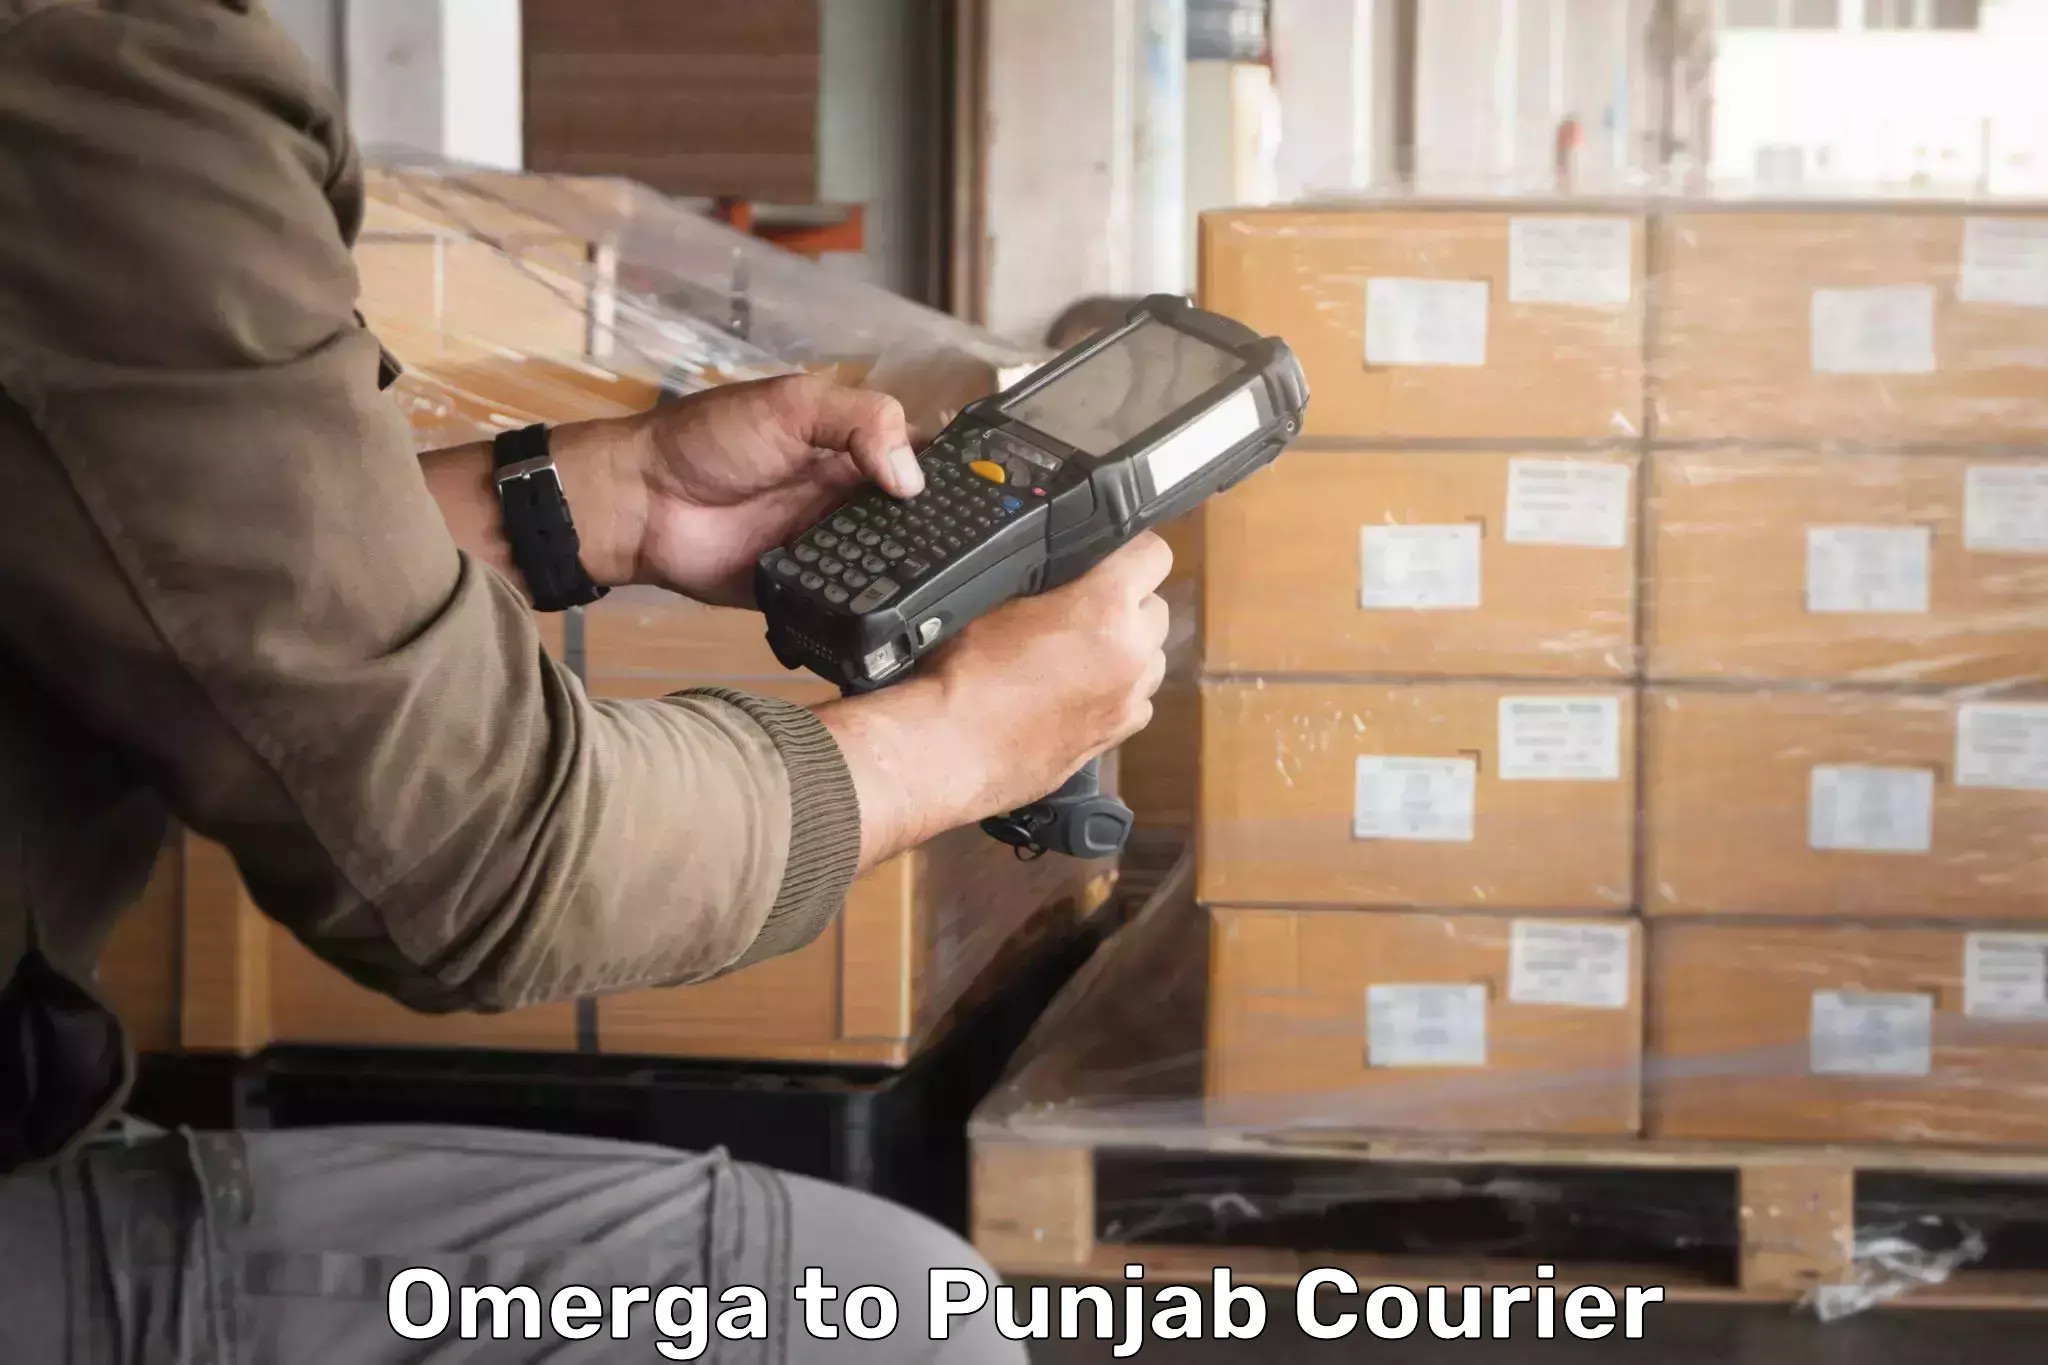 Efficient parcel delivery Omerga to Punjab